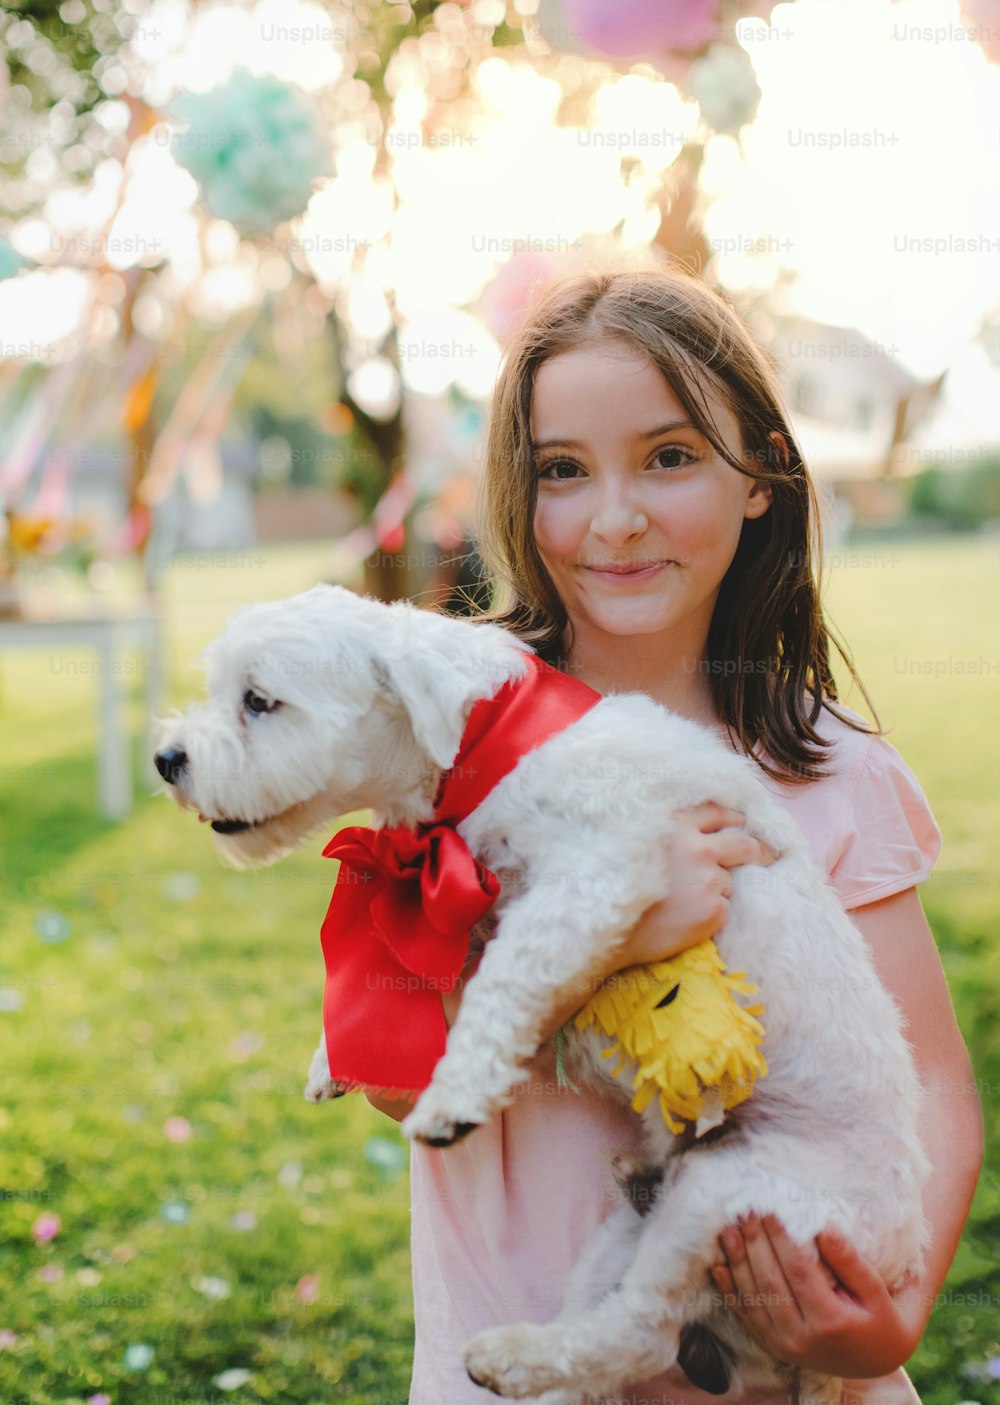 Retrato da menina pequena com o cão de estimação presente ao ar livre no jardim no verão, olhando para a câmera.